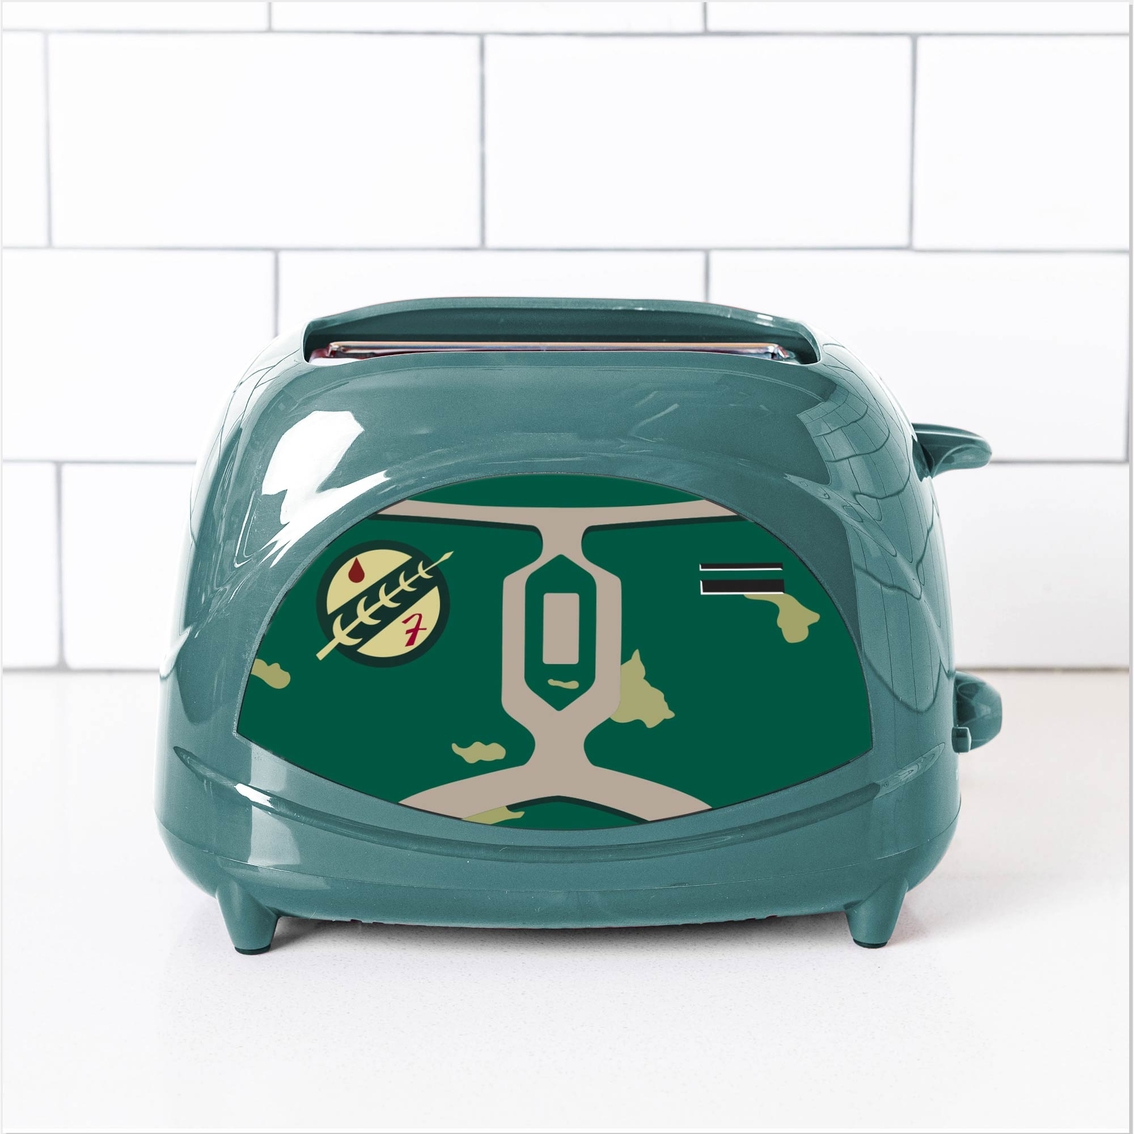 Star Wars Boba Fett Empire Toaster - Image 2 of 3